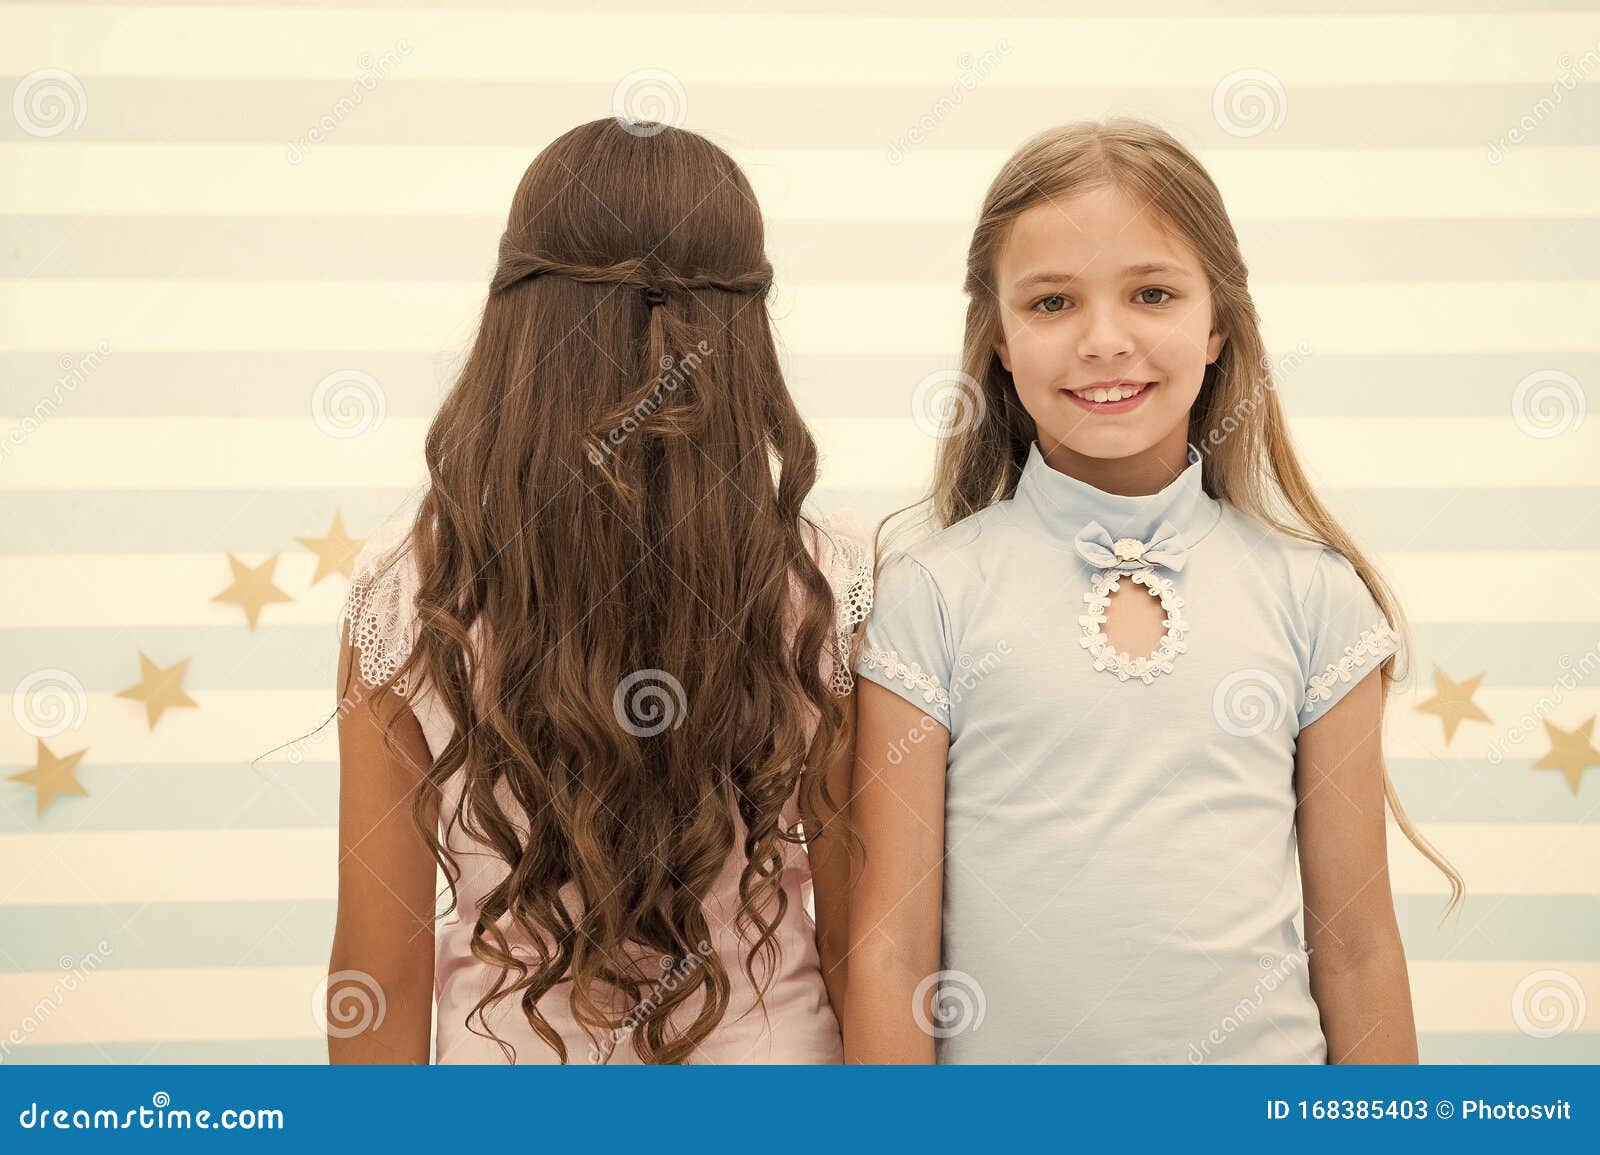 Красивые Длинные Волосы Для Девочек Фото